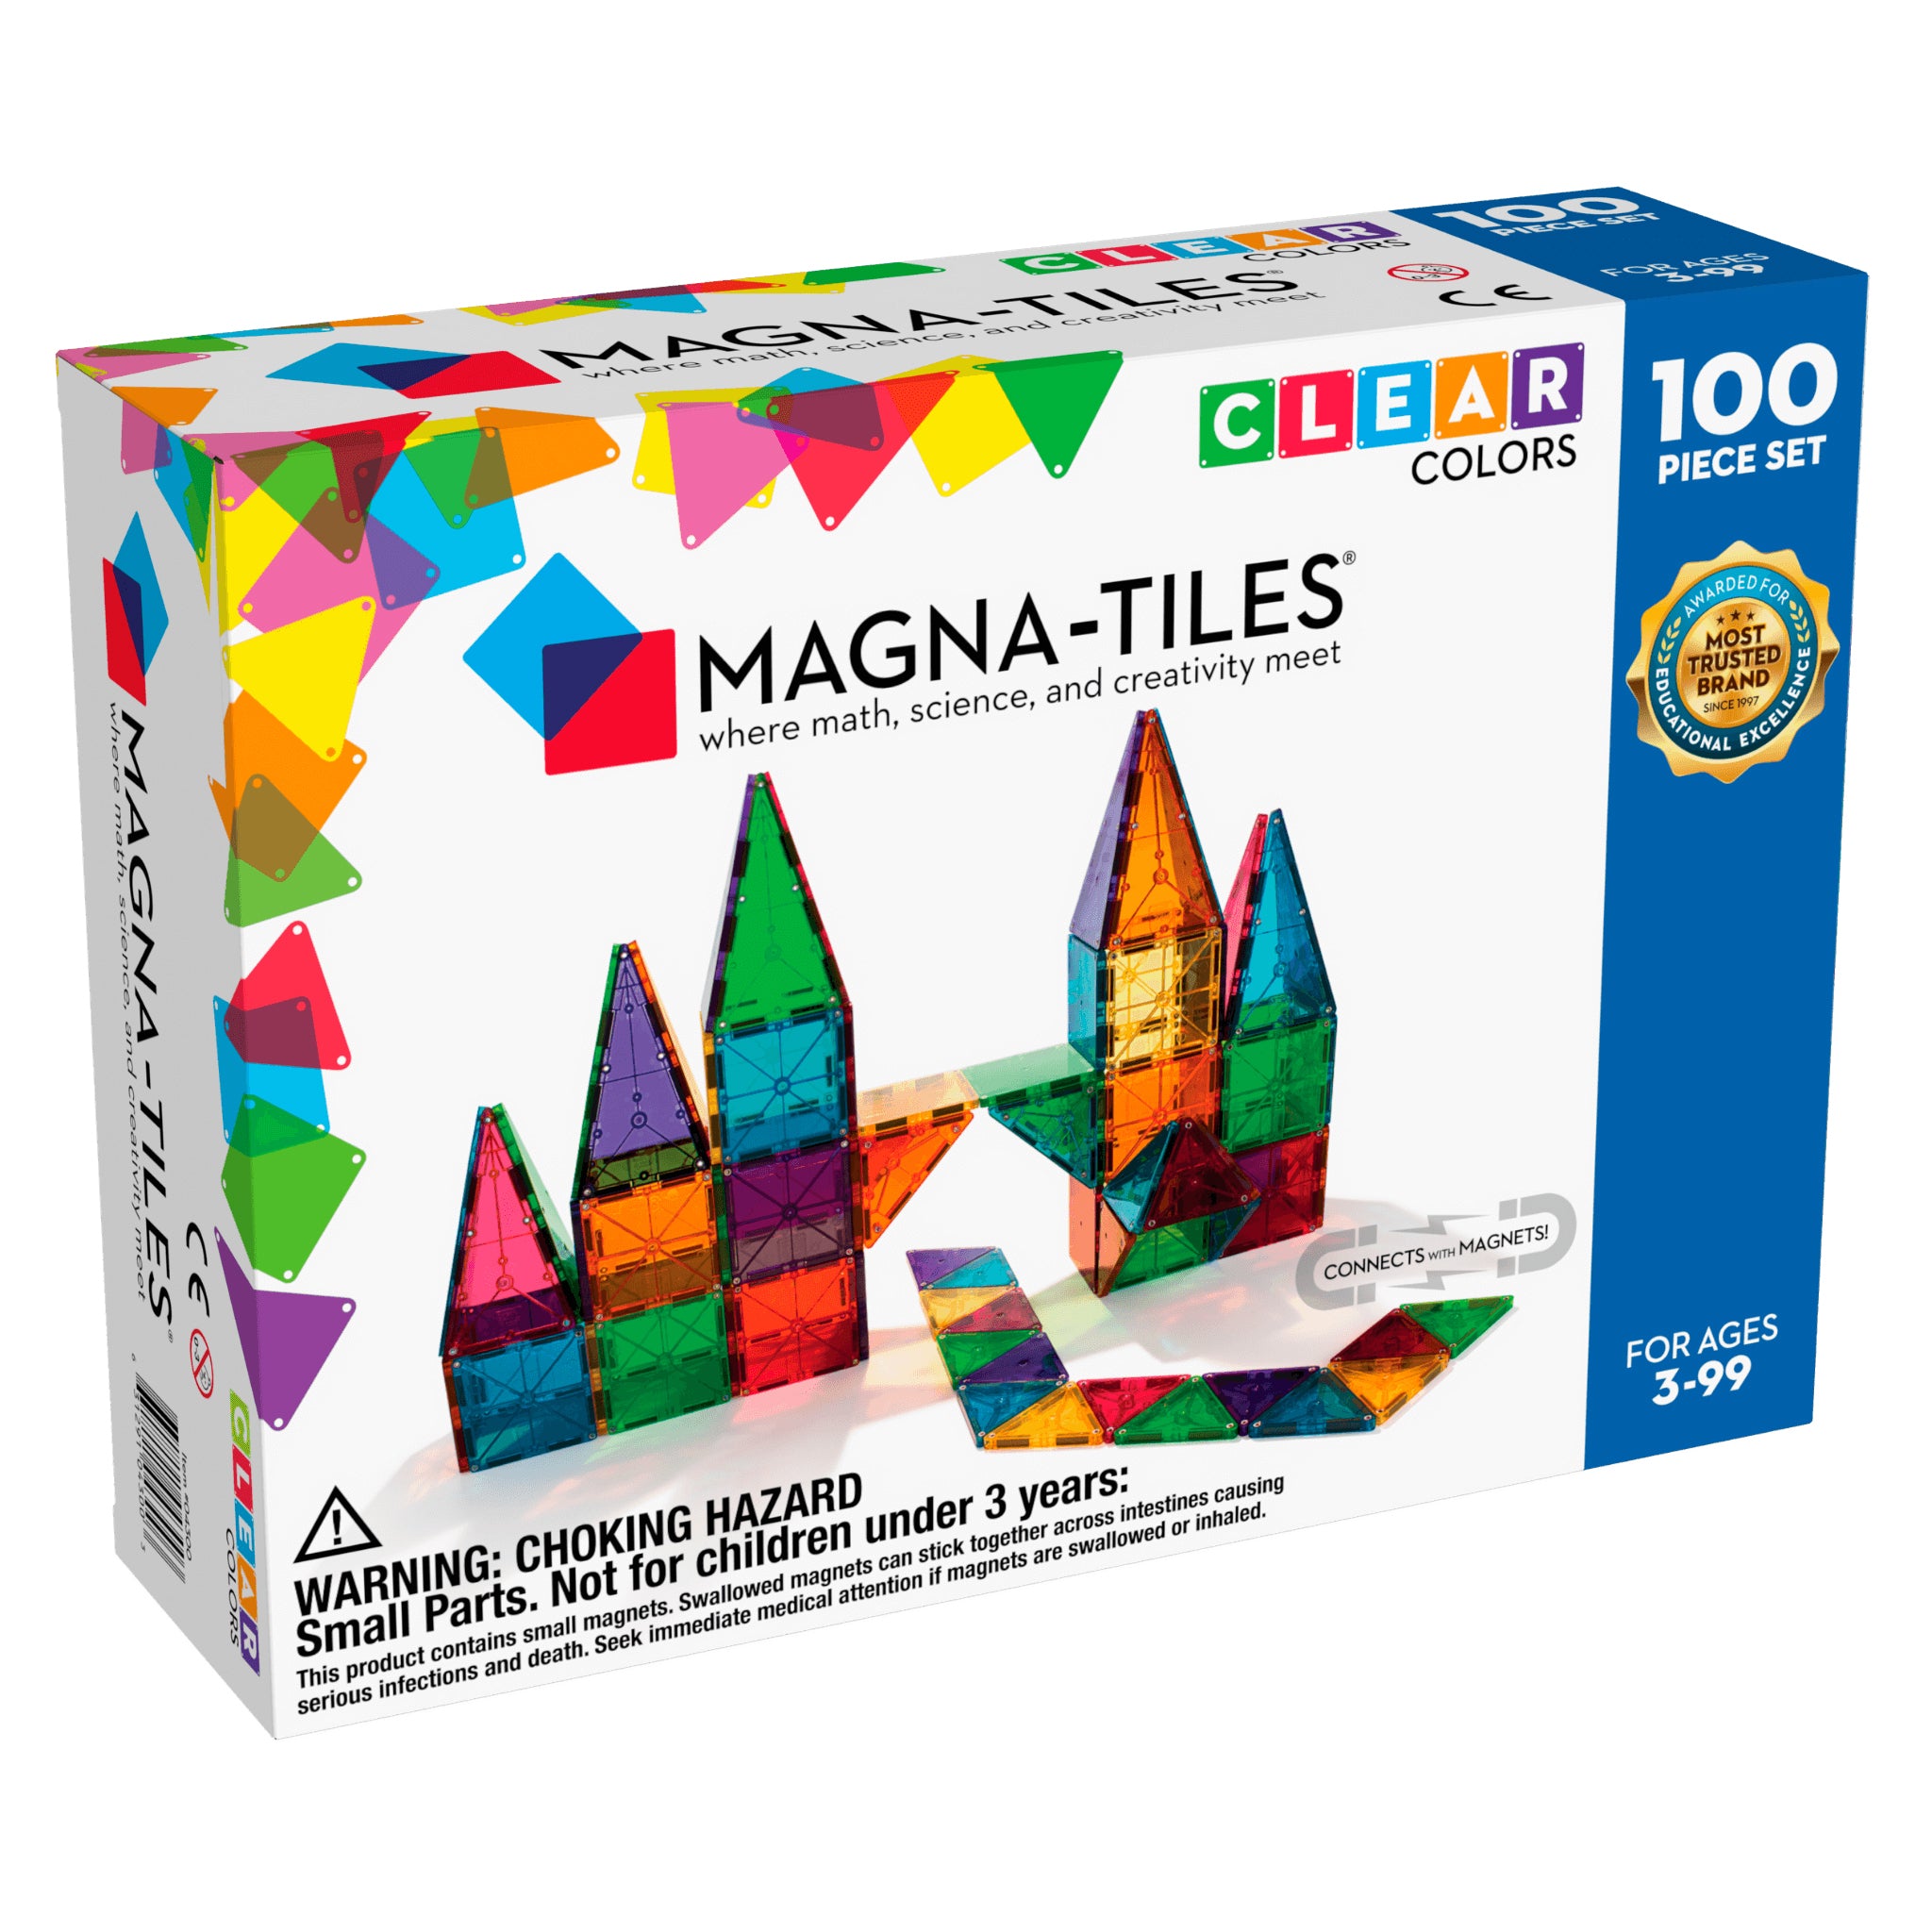 magna-tiles-tiles-clear-colors-100-piece-set- (1)